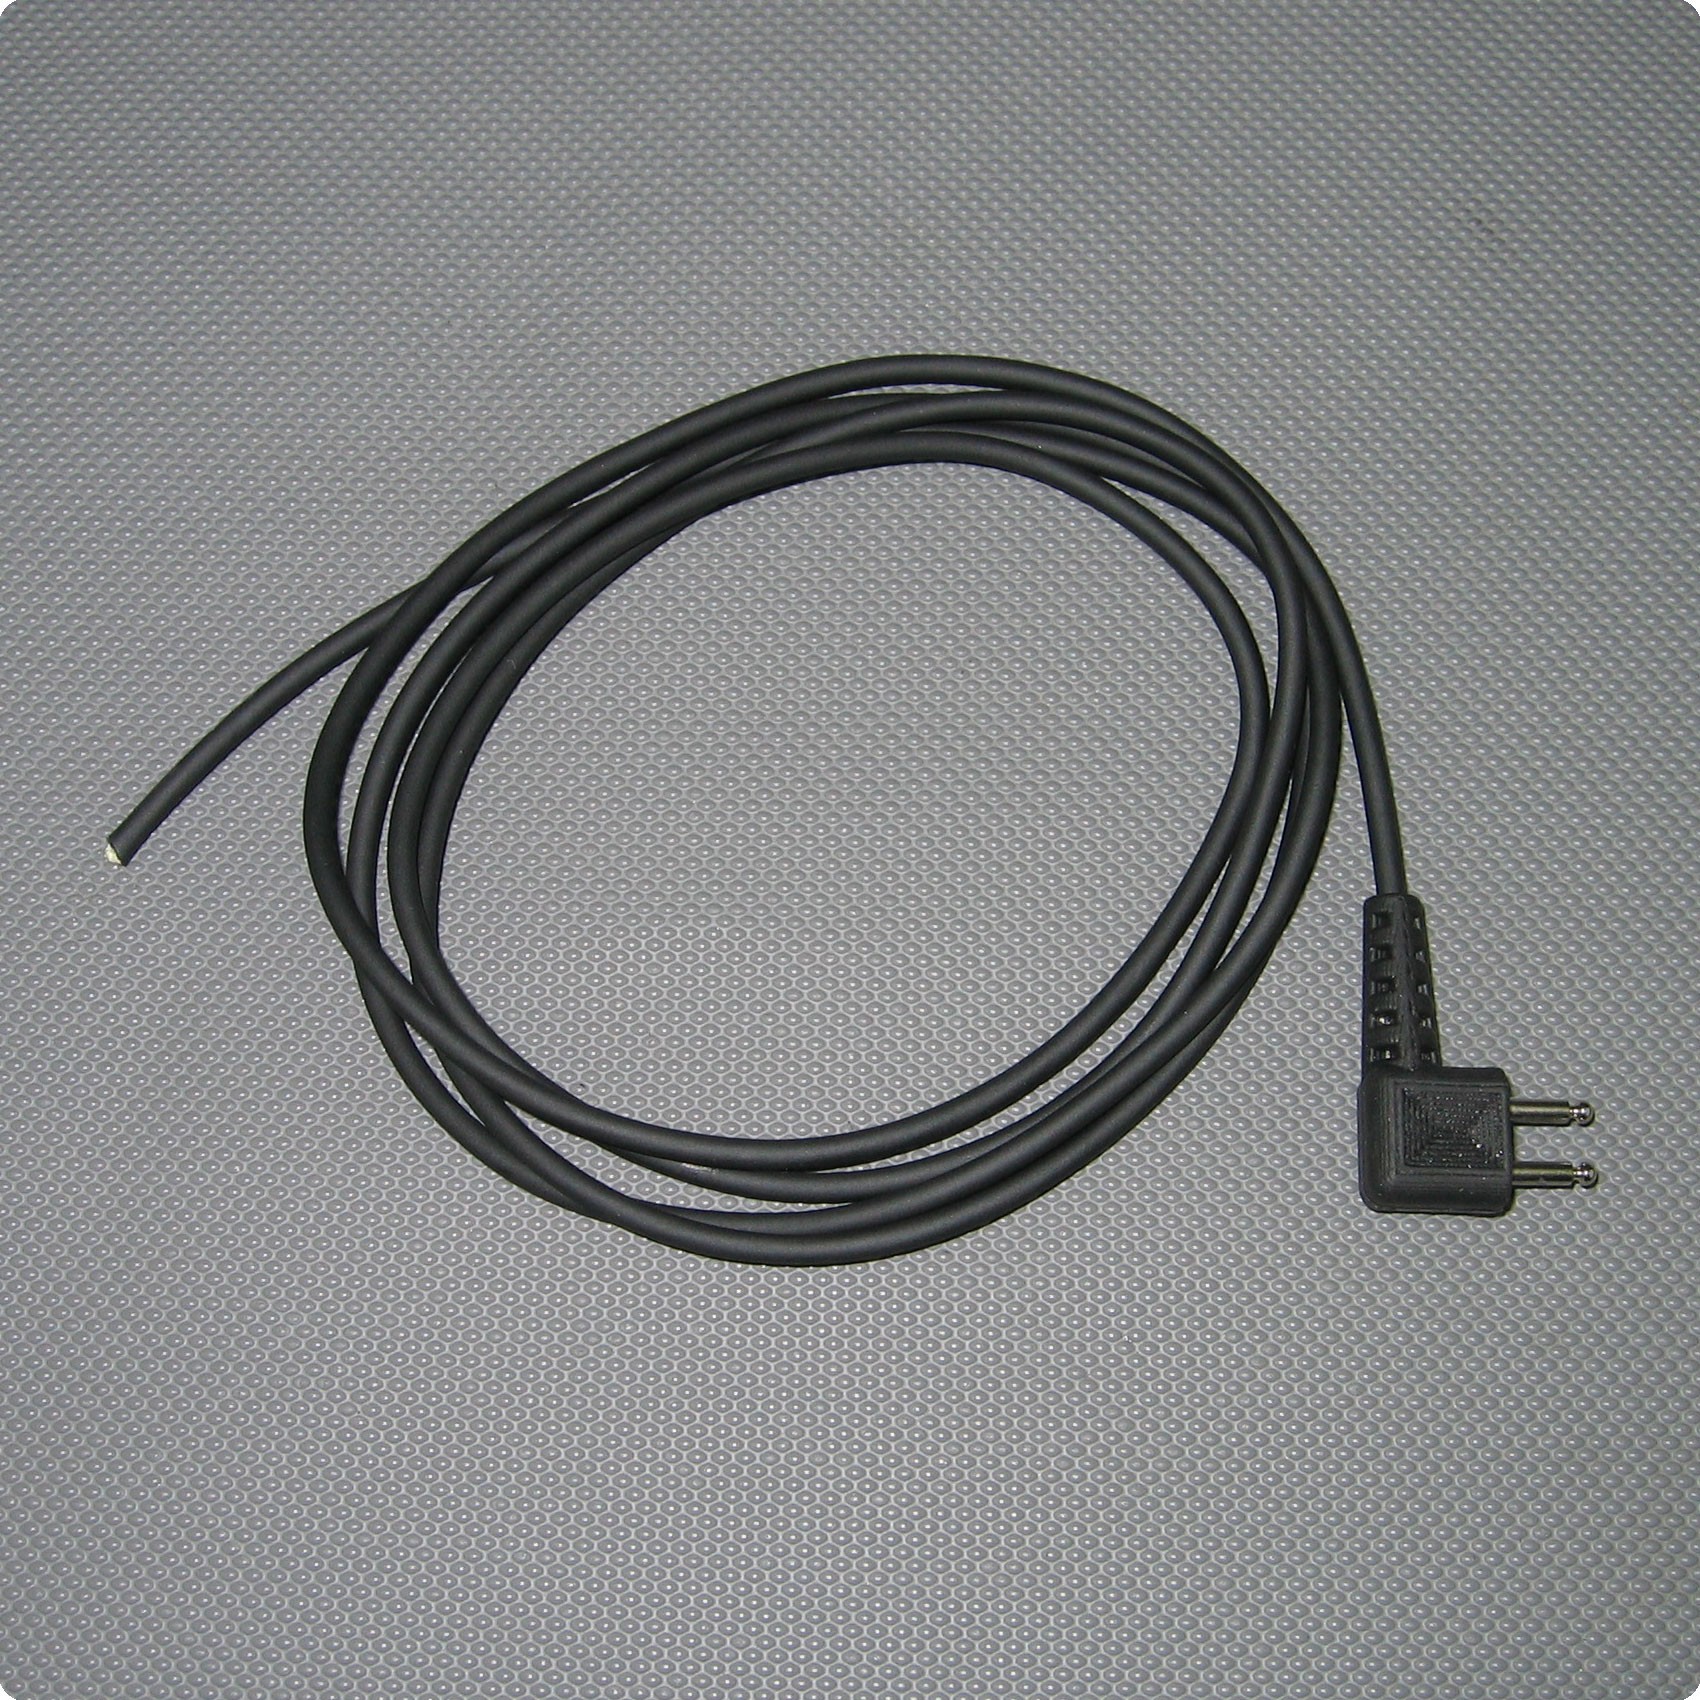 Cable con enchufe U-173/U y micrófono MP-101